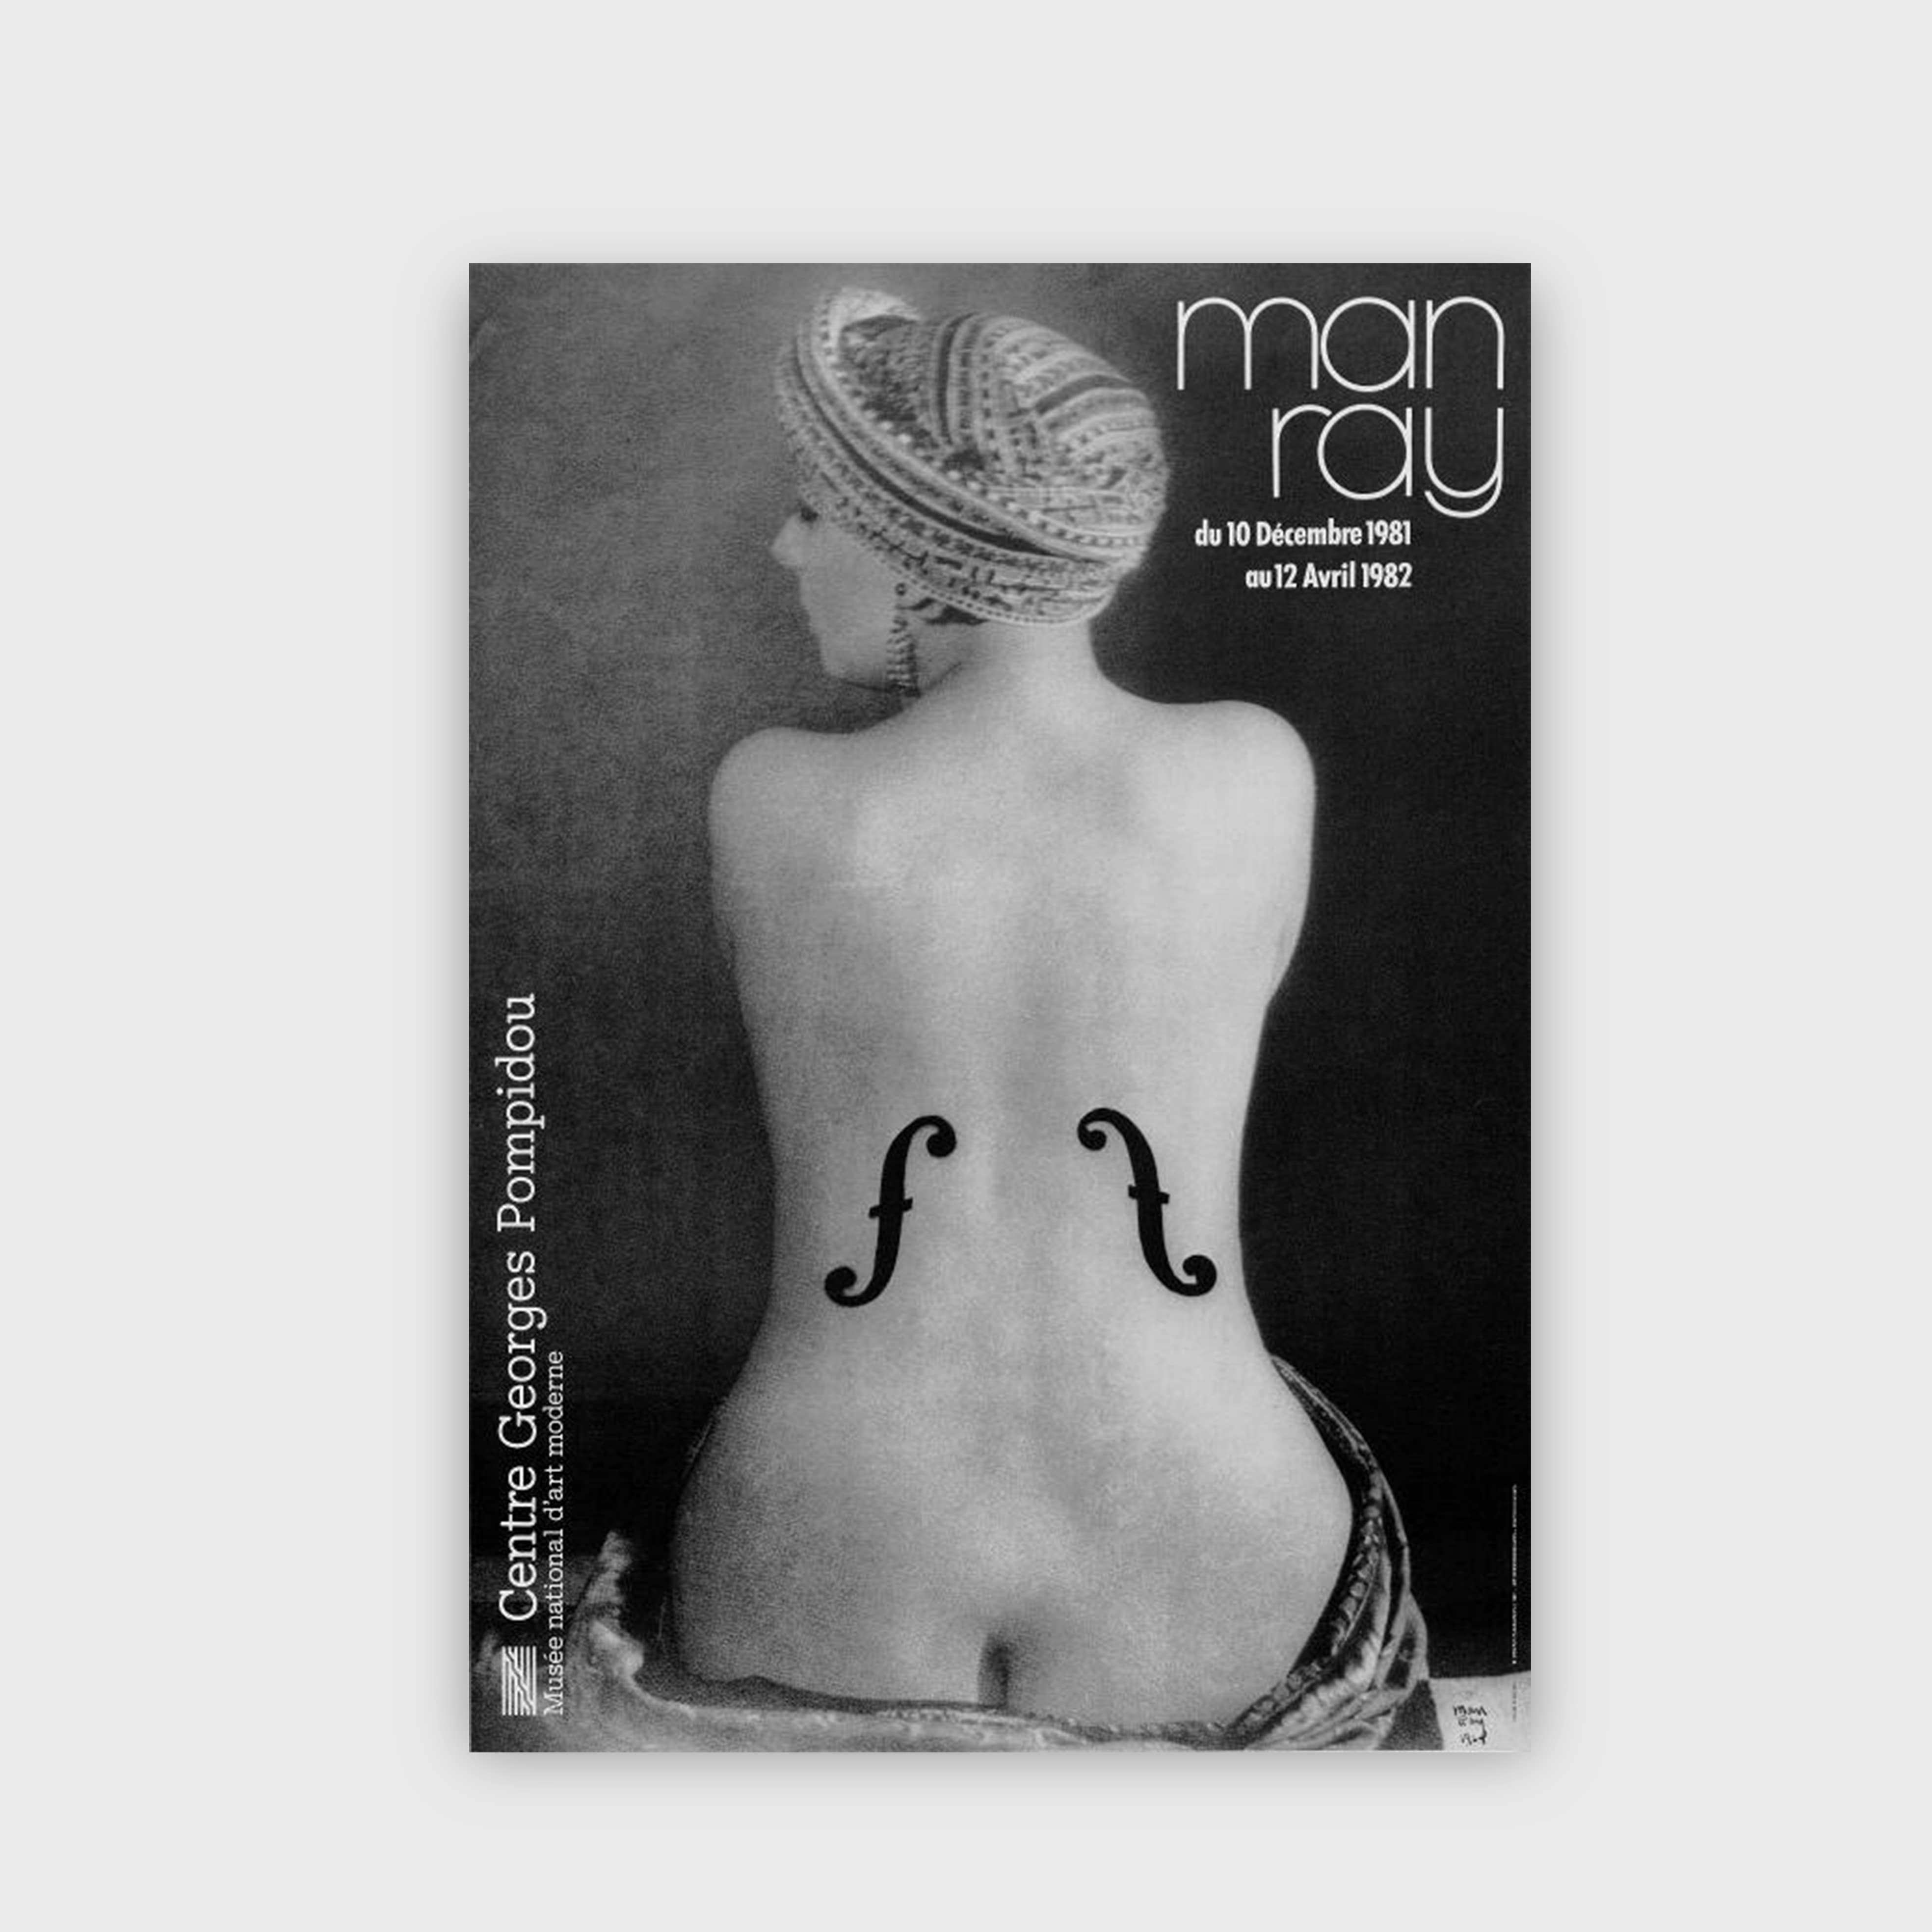 Man Ray 1981